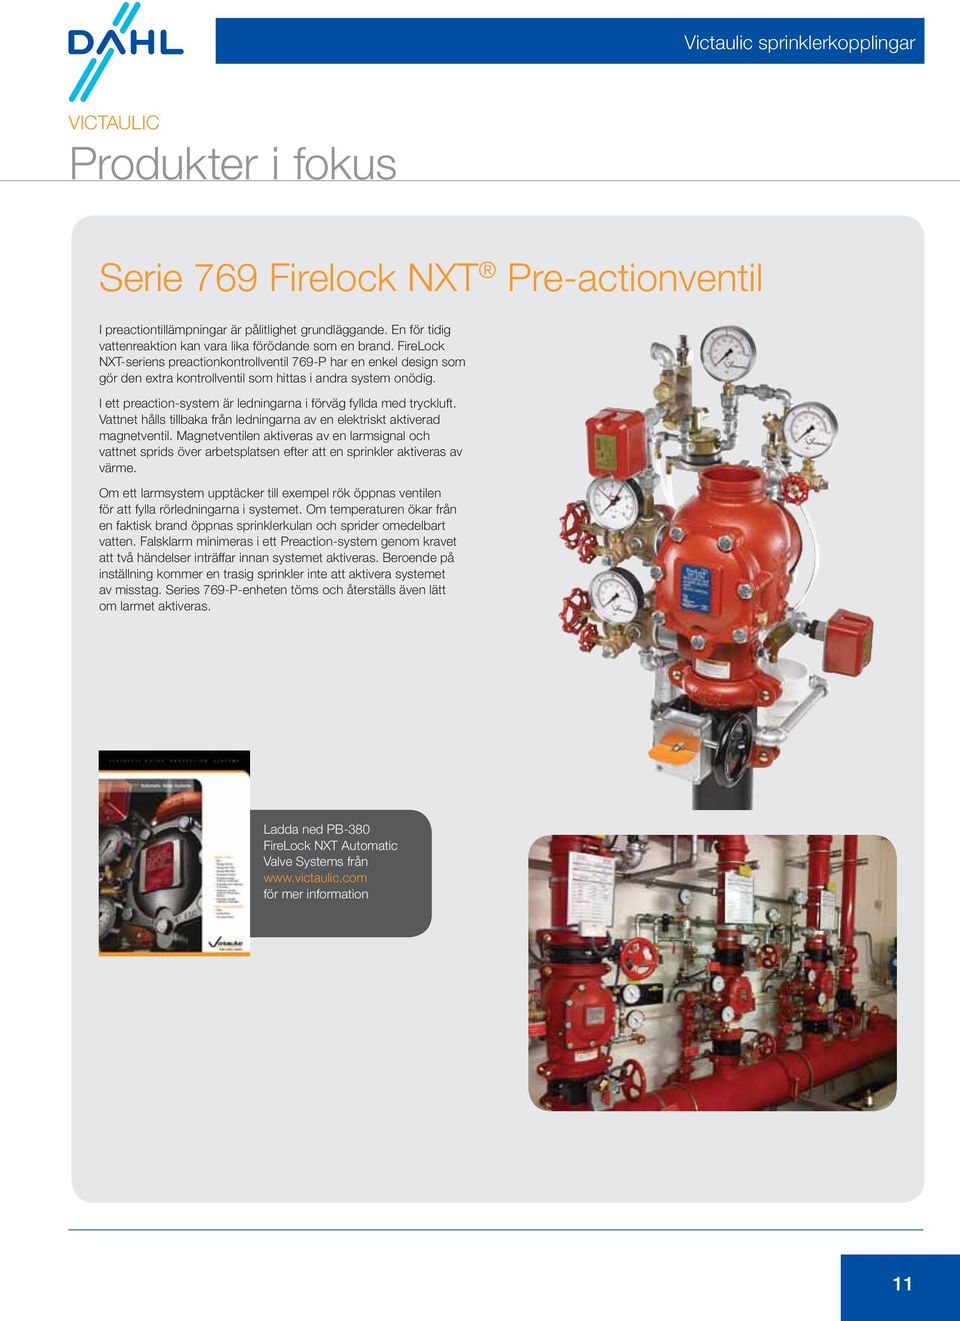 FireLock NXT-seriens preactionkontrollventil 769-P har en enkel design som gör den extra kontrollventil som hittas i andra system onödig.